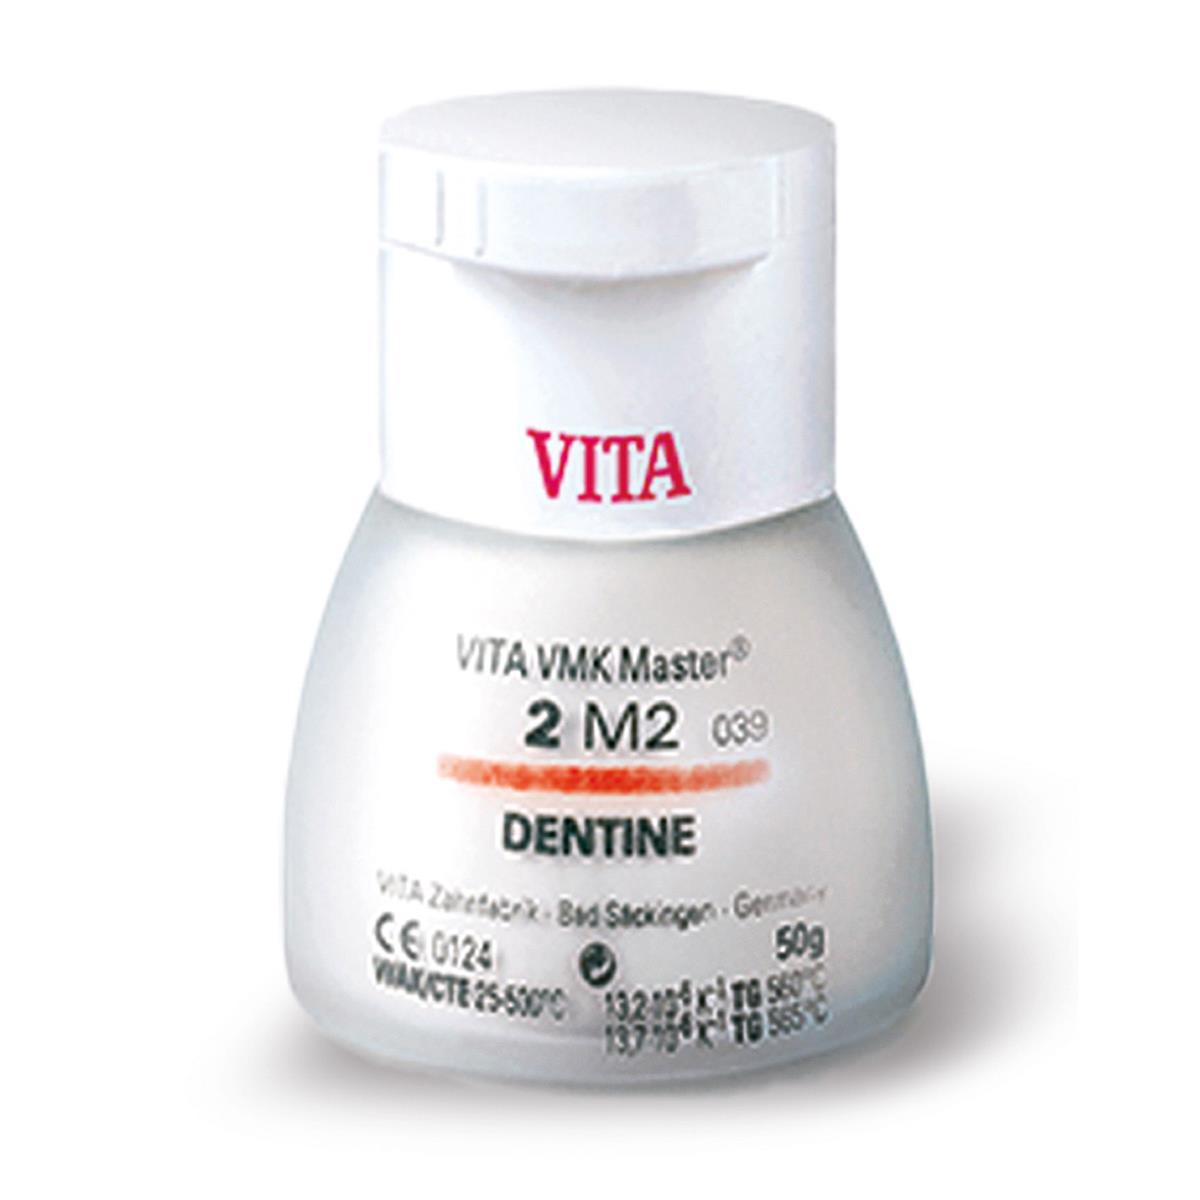 Vita VMK Master Dentine 2L2.5 12g